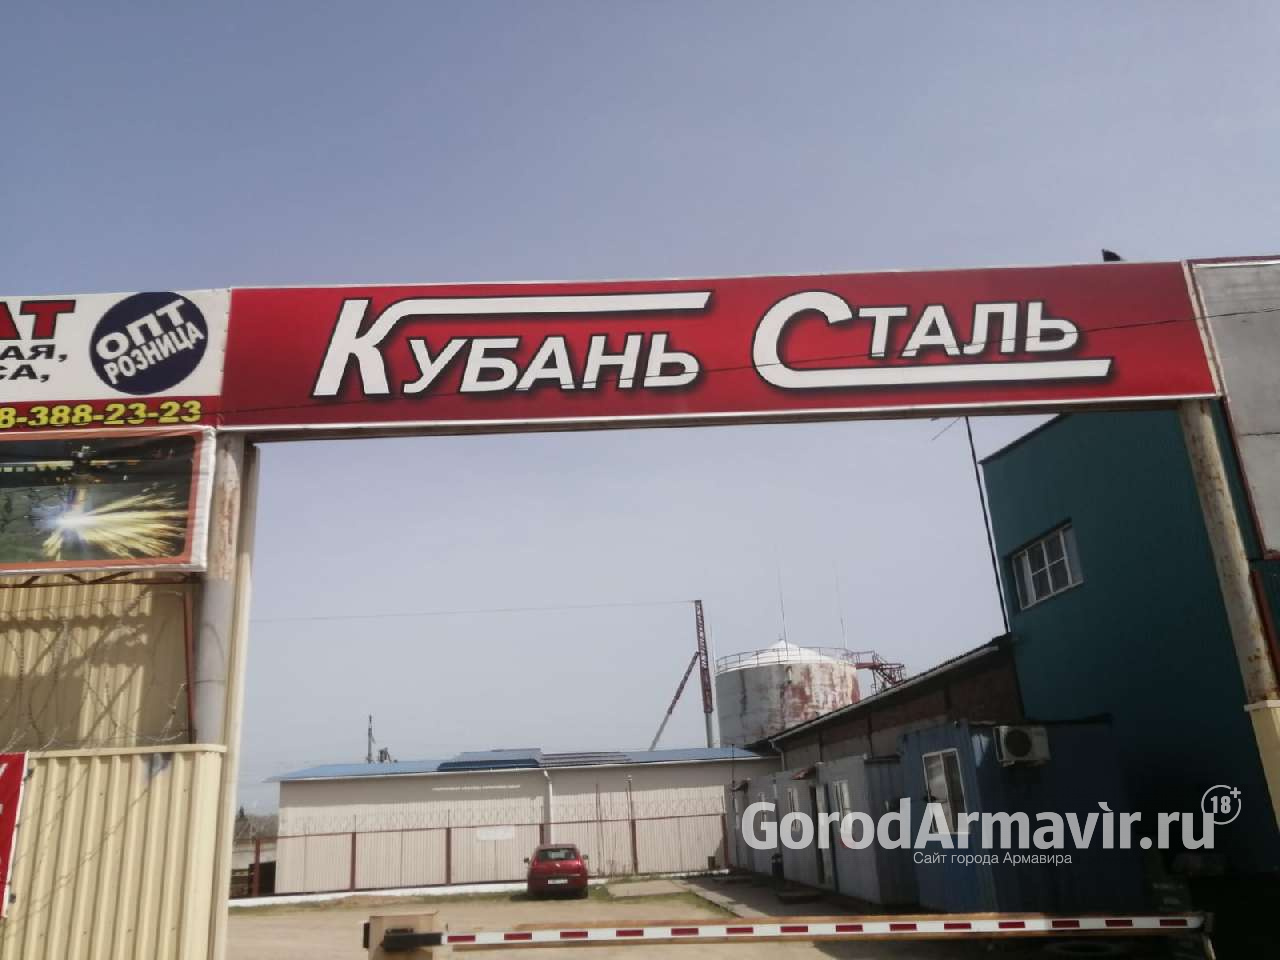 Центральная металлобаза Армавира «Кубаньсталь» предлагает лучшие цены и условия на рынке